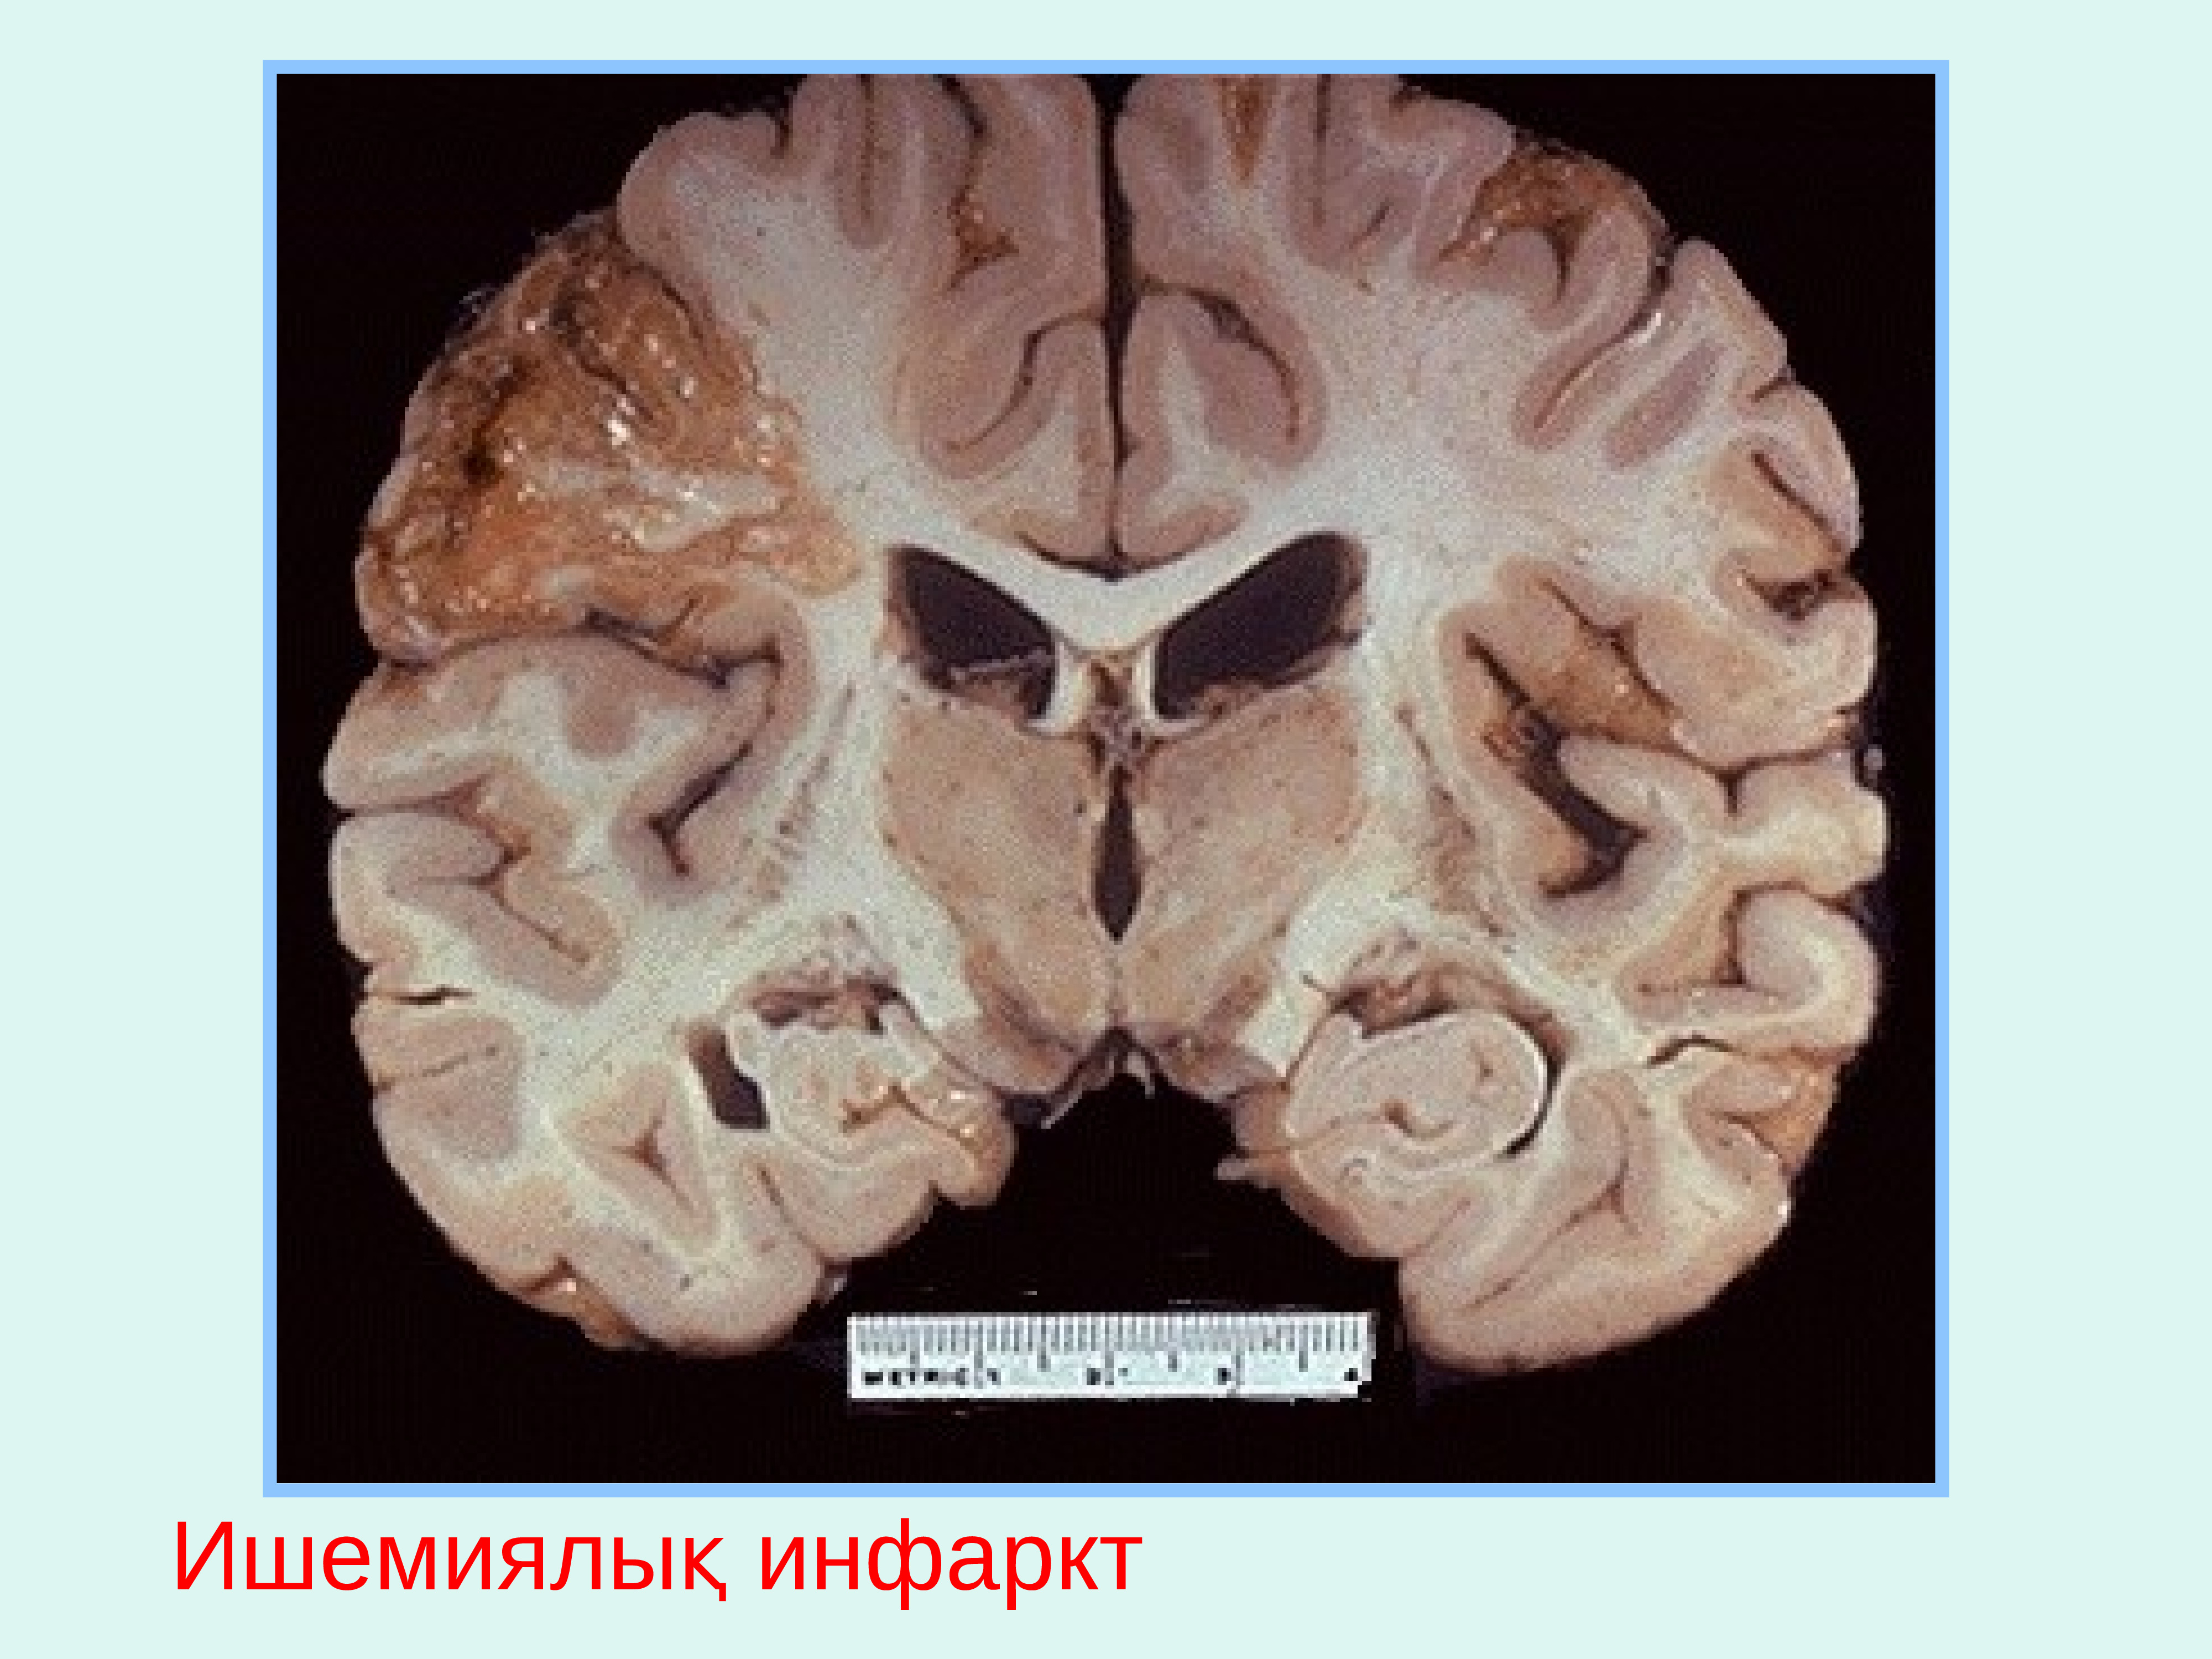 Диффузное поражение головного мозга. Ишемический инфаркт головного мозга макропрепарат. Колликвационный некроз головного мозга. Болезнь Виллизиева круга. Киста головного мозга макропрепарат.